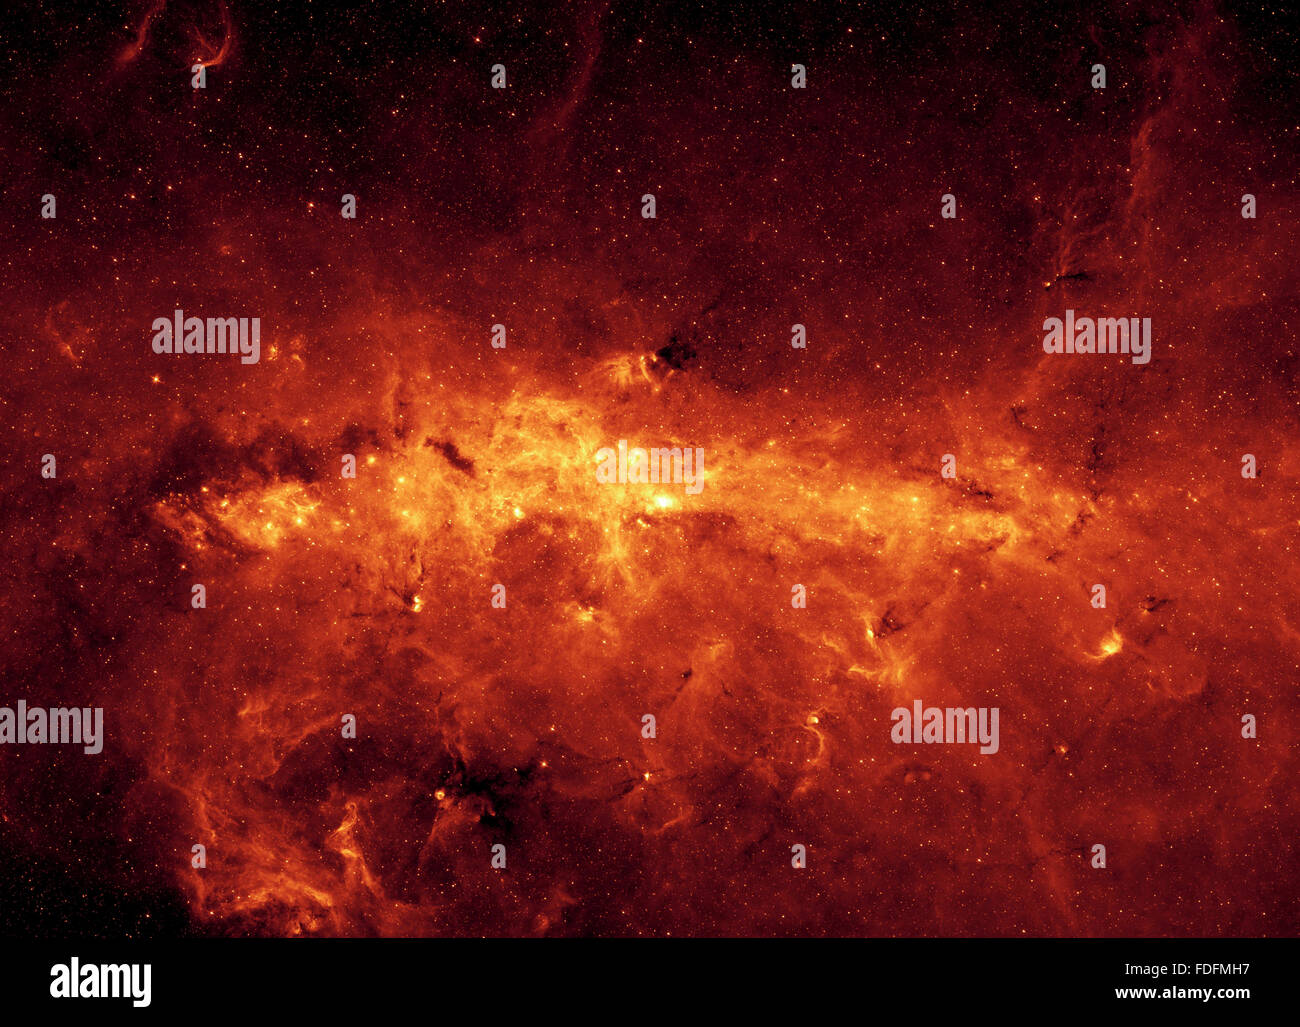 NASA image of Milky Way Stock Photo